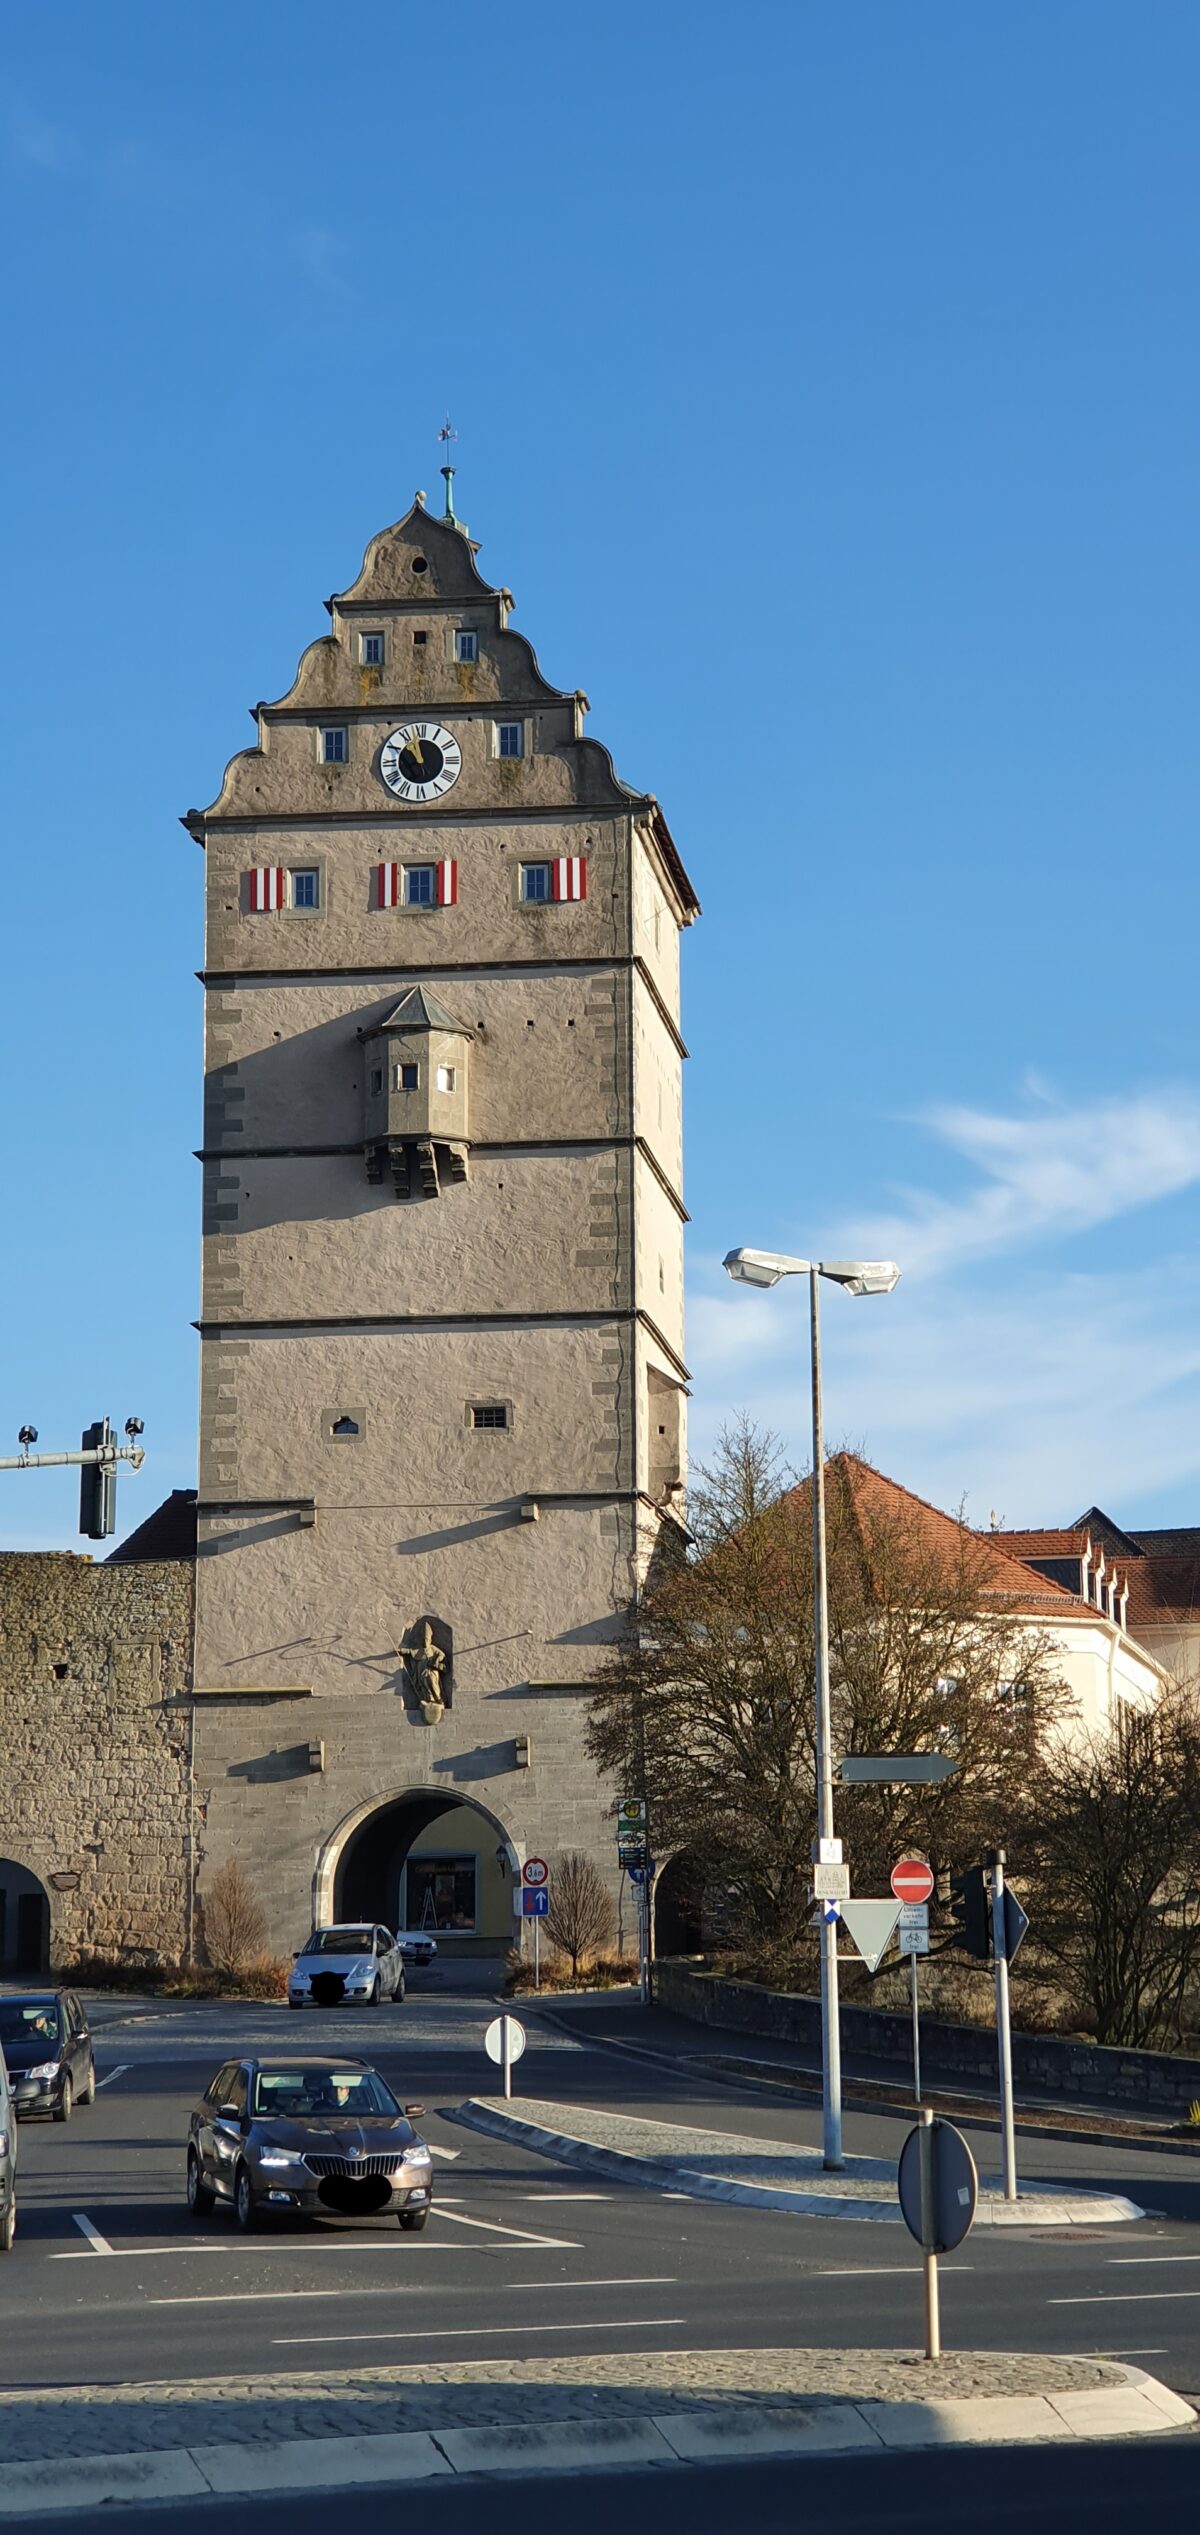 Ein Mobilitätskonzept für ganz Bad Neustadt wird erarbeitet